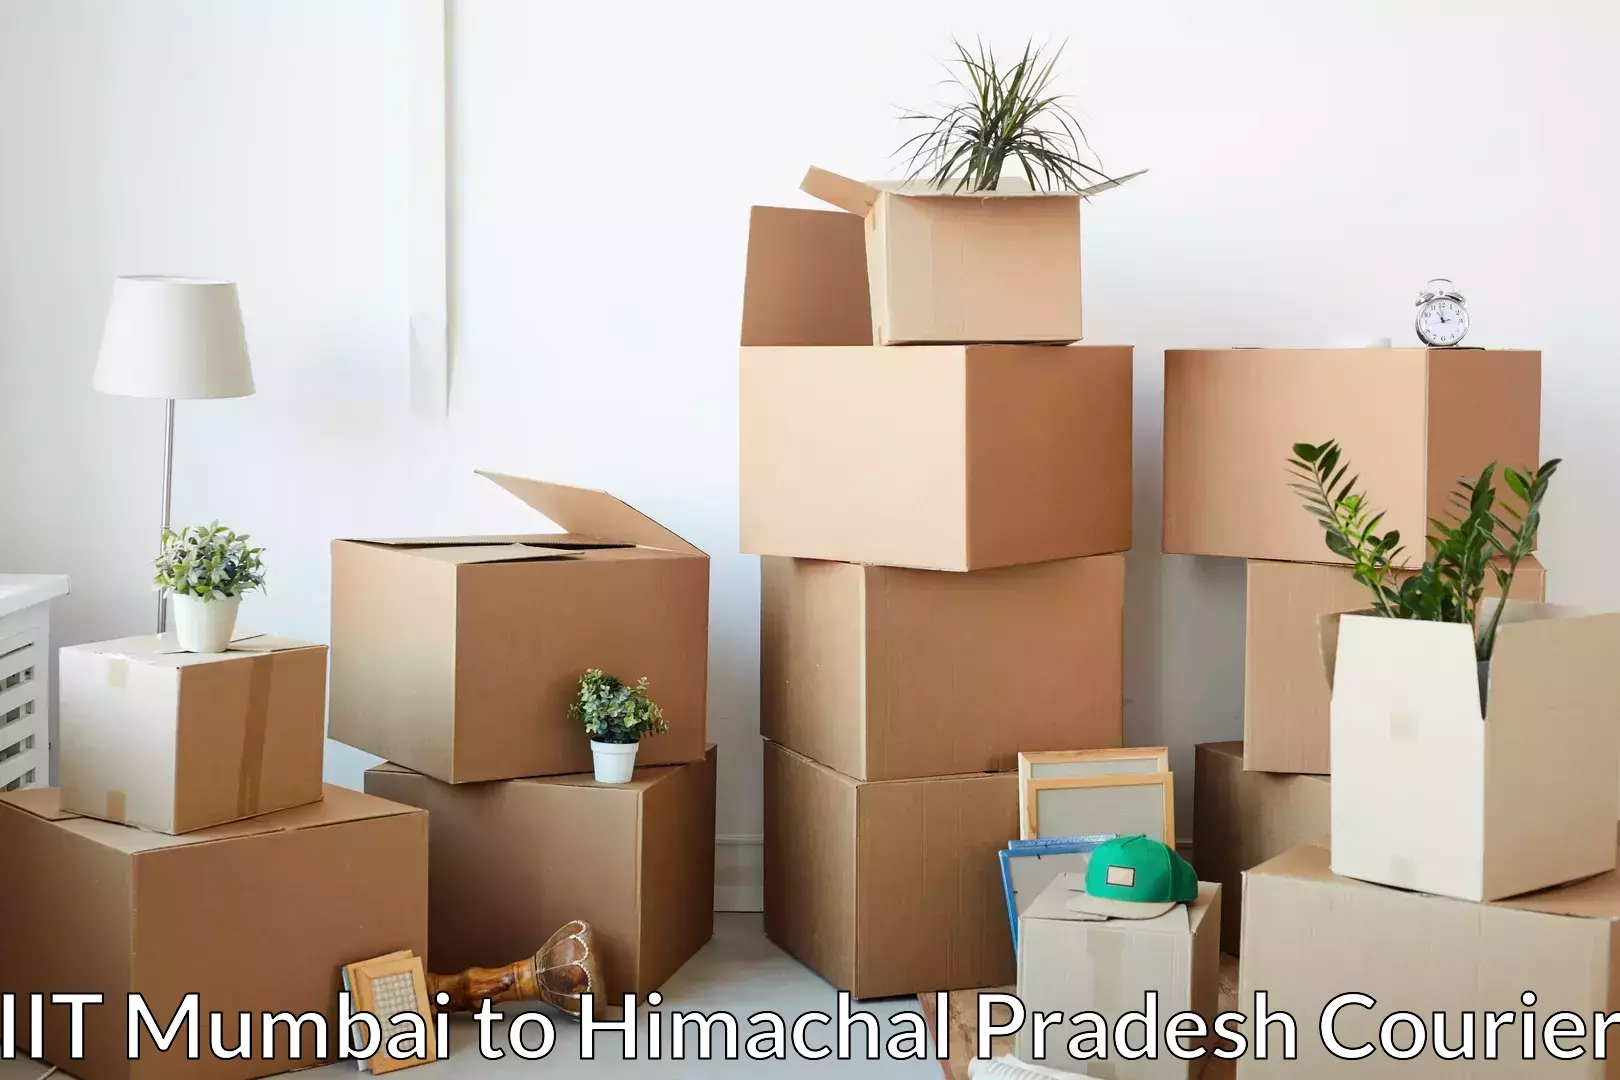 Professional moving assistance IIT Mumbai to Baddi